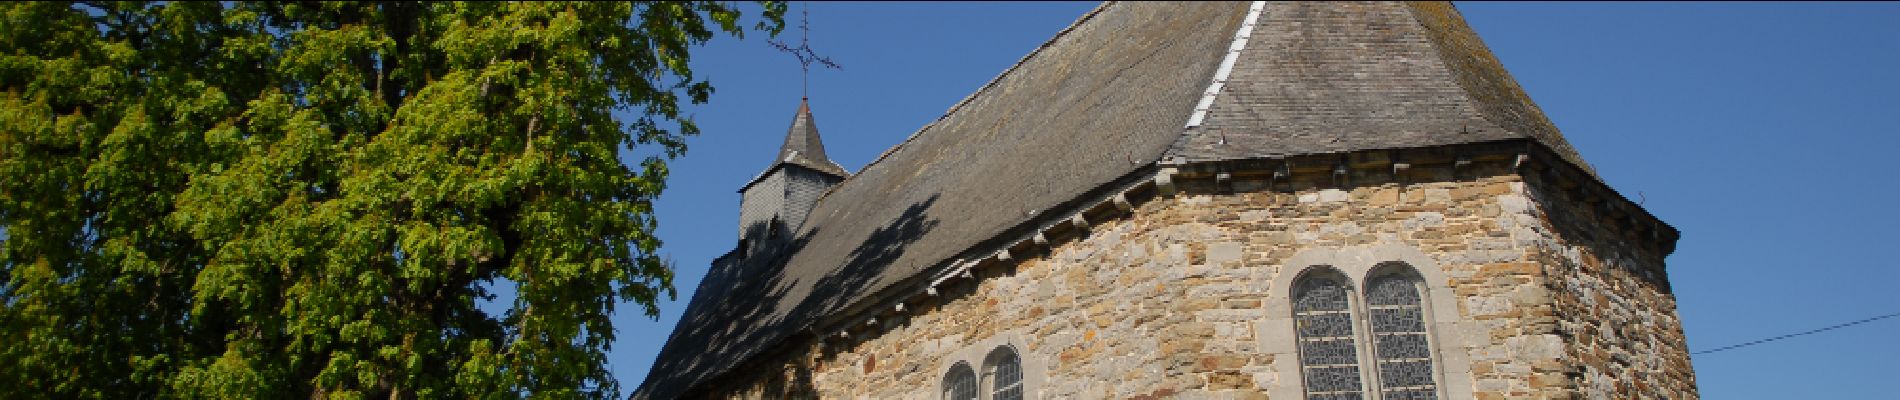 Point d'intérêt Hamois - Chapelle Sainte-Agathe de Hubinne - Photo